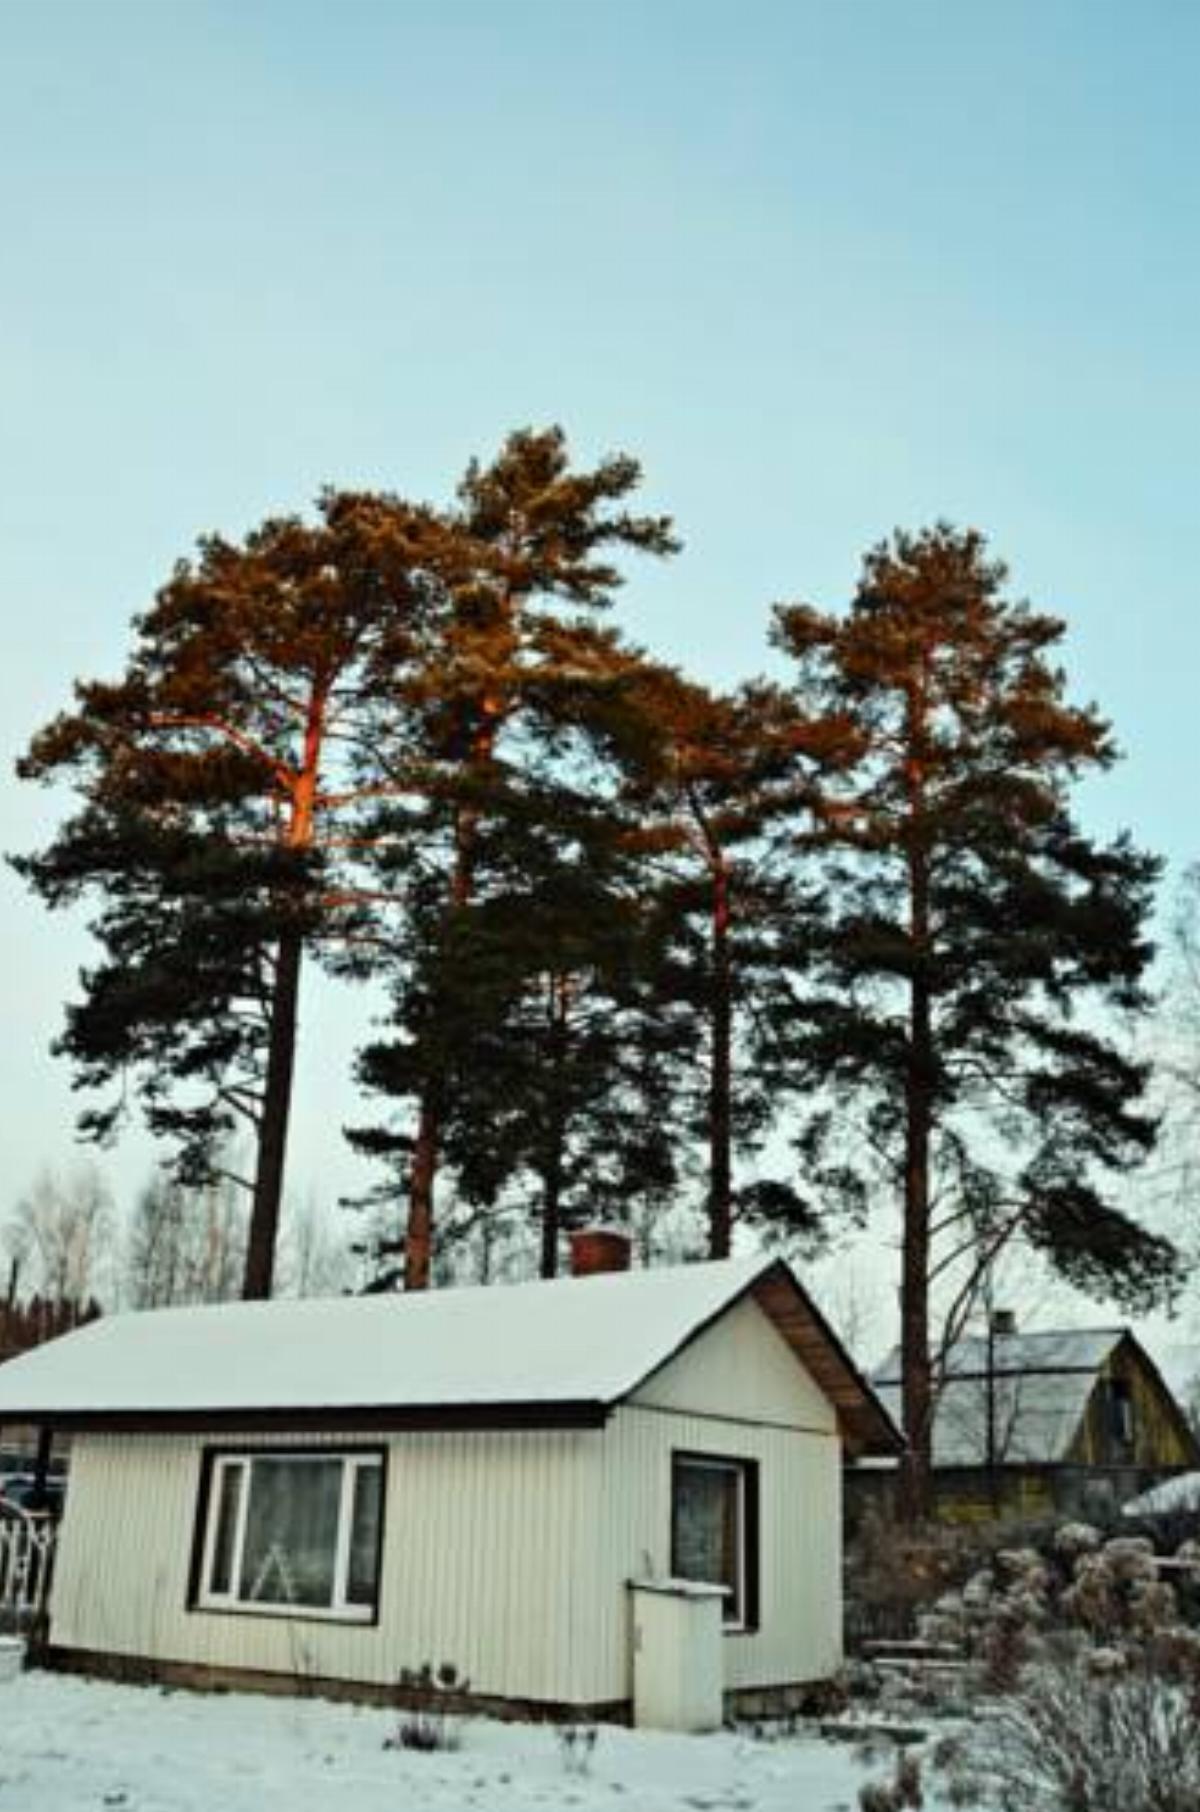 Guest House Uyut Karelii